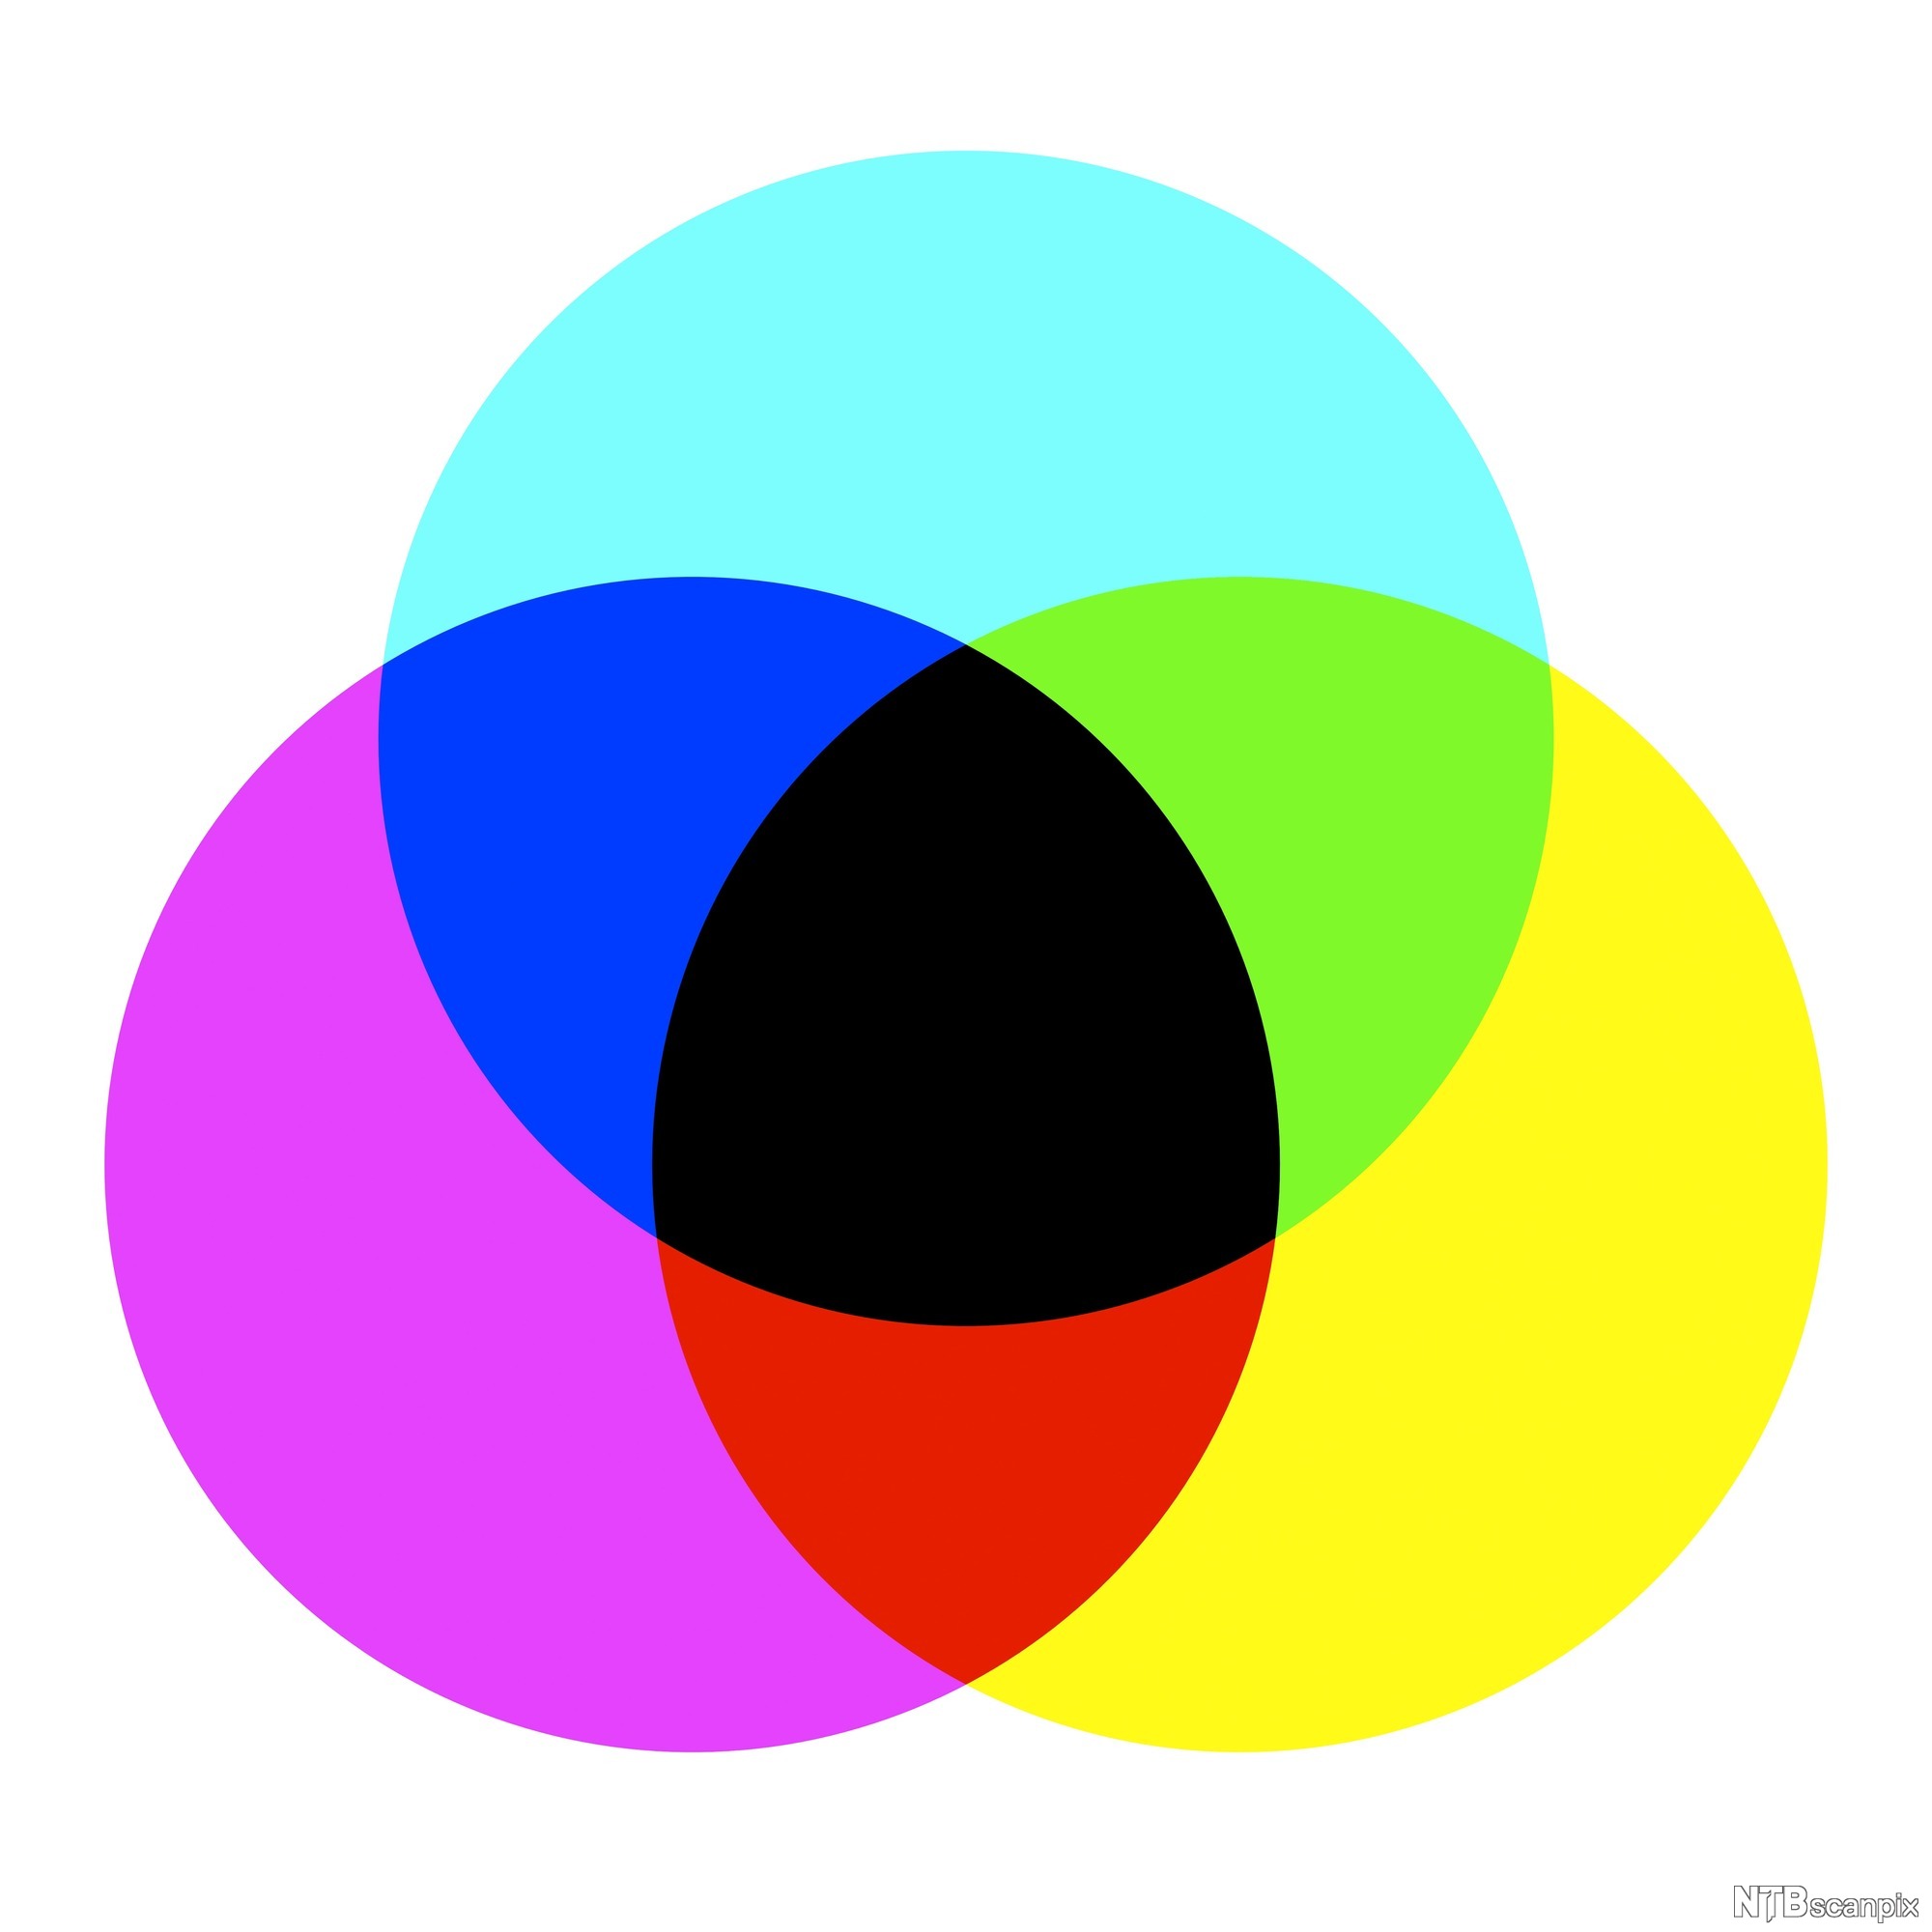 Картинка цветная для принтера. Модель Смук цвета. Цветовая модель РГБ. Цветовая модель CMYK. Смешение цветов CMYK.